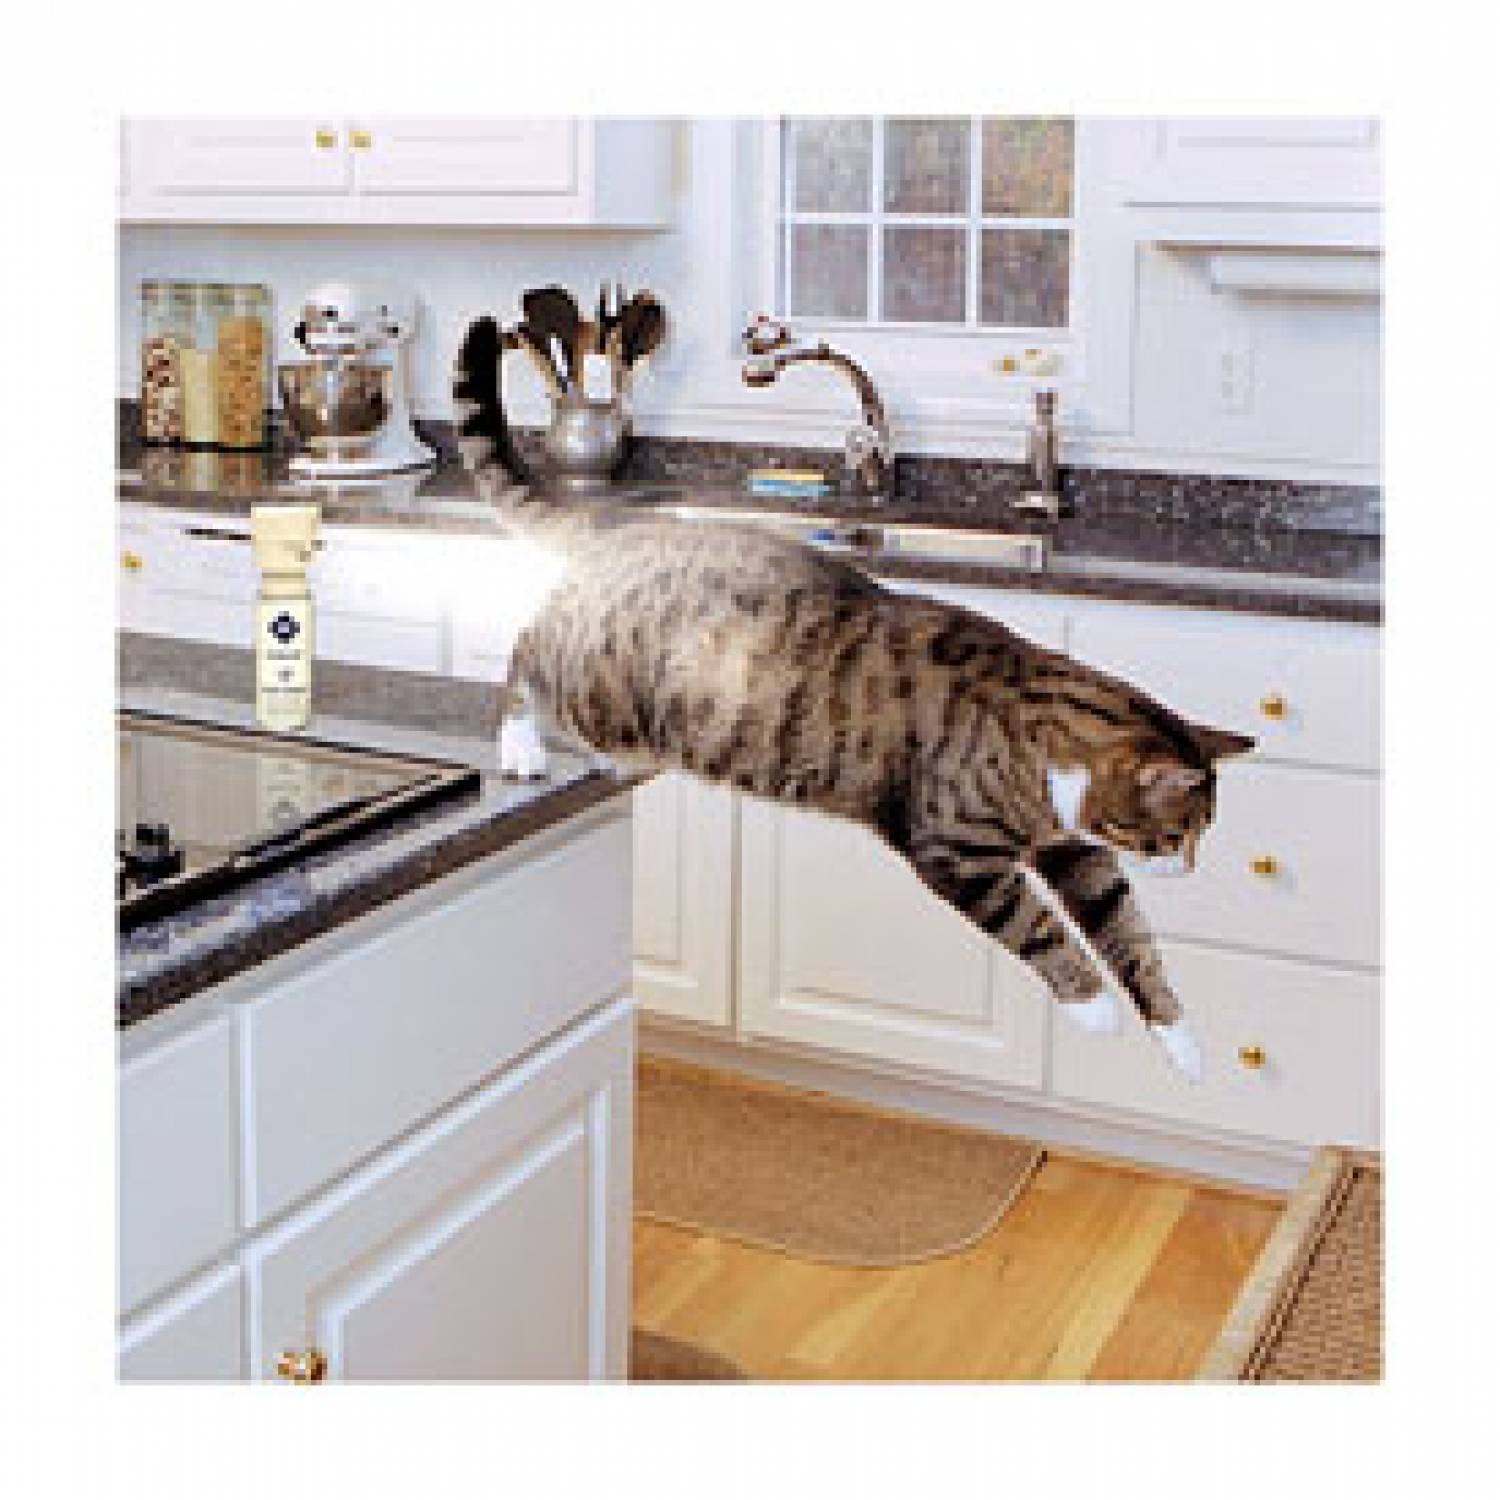 Эффективные методы отучения кошек и котов от лазанья по столам